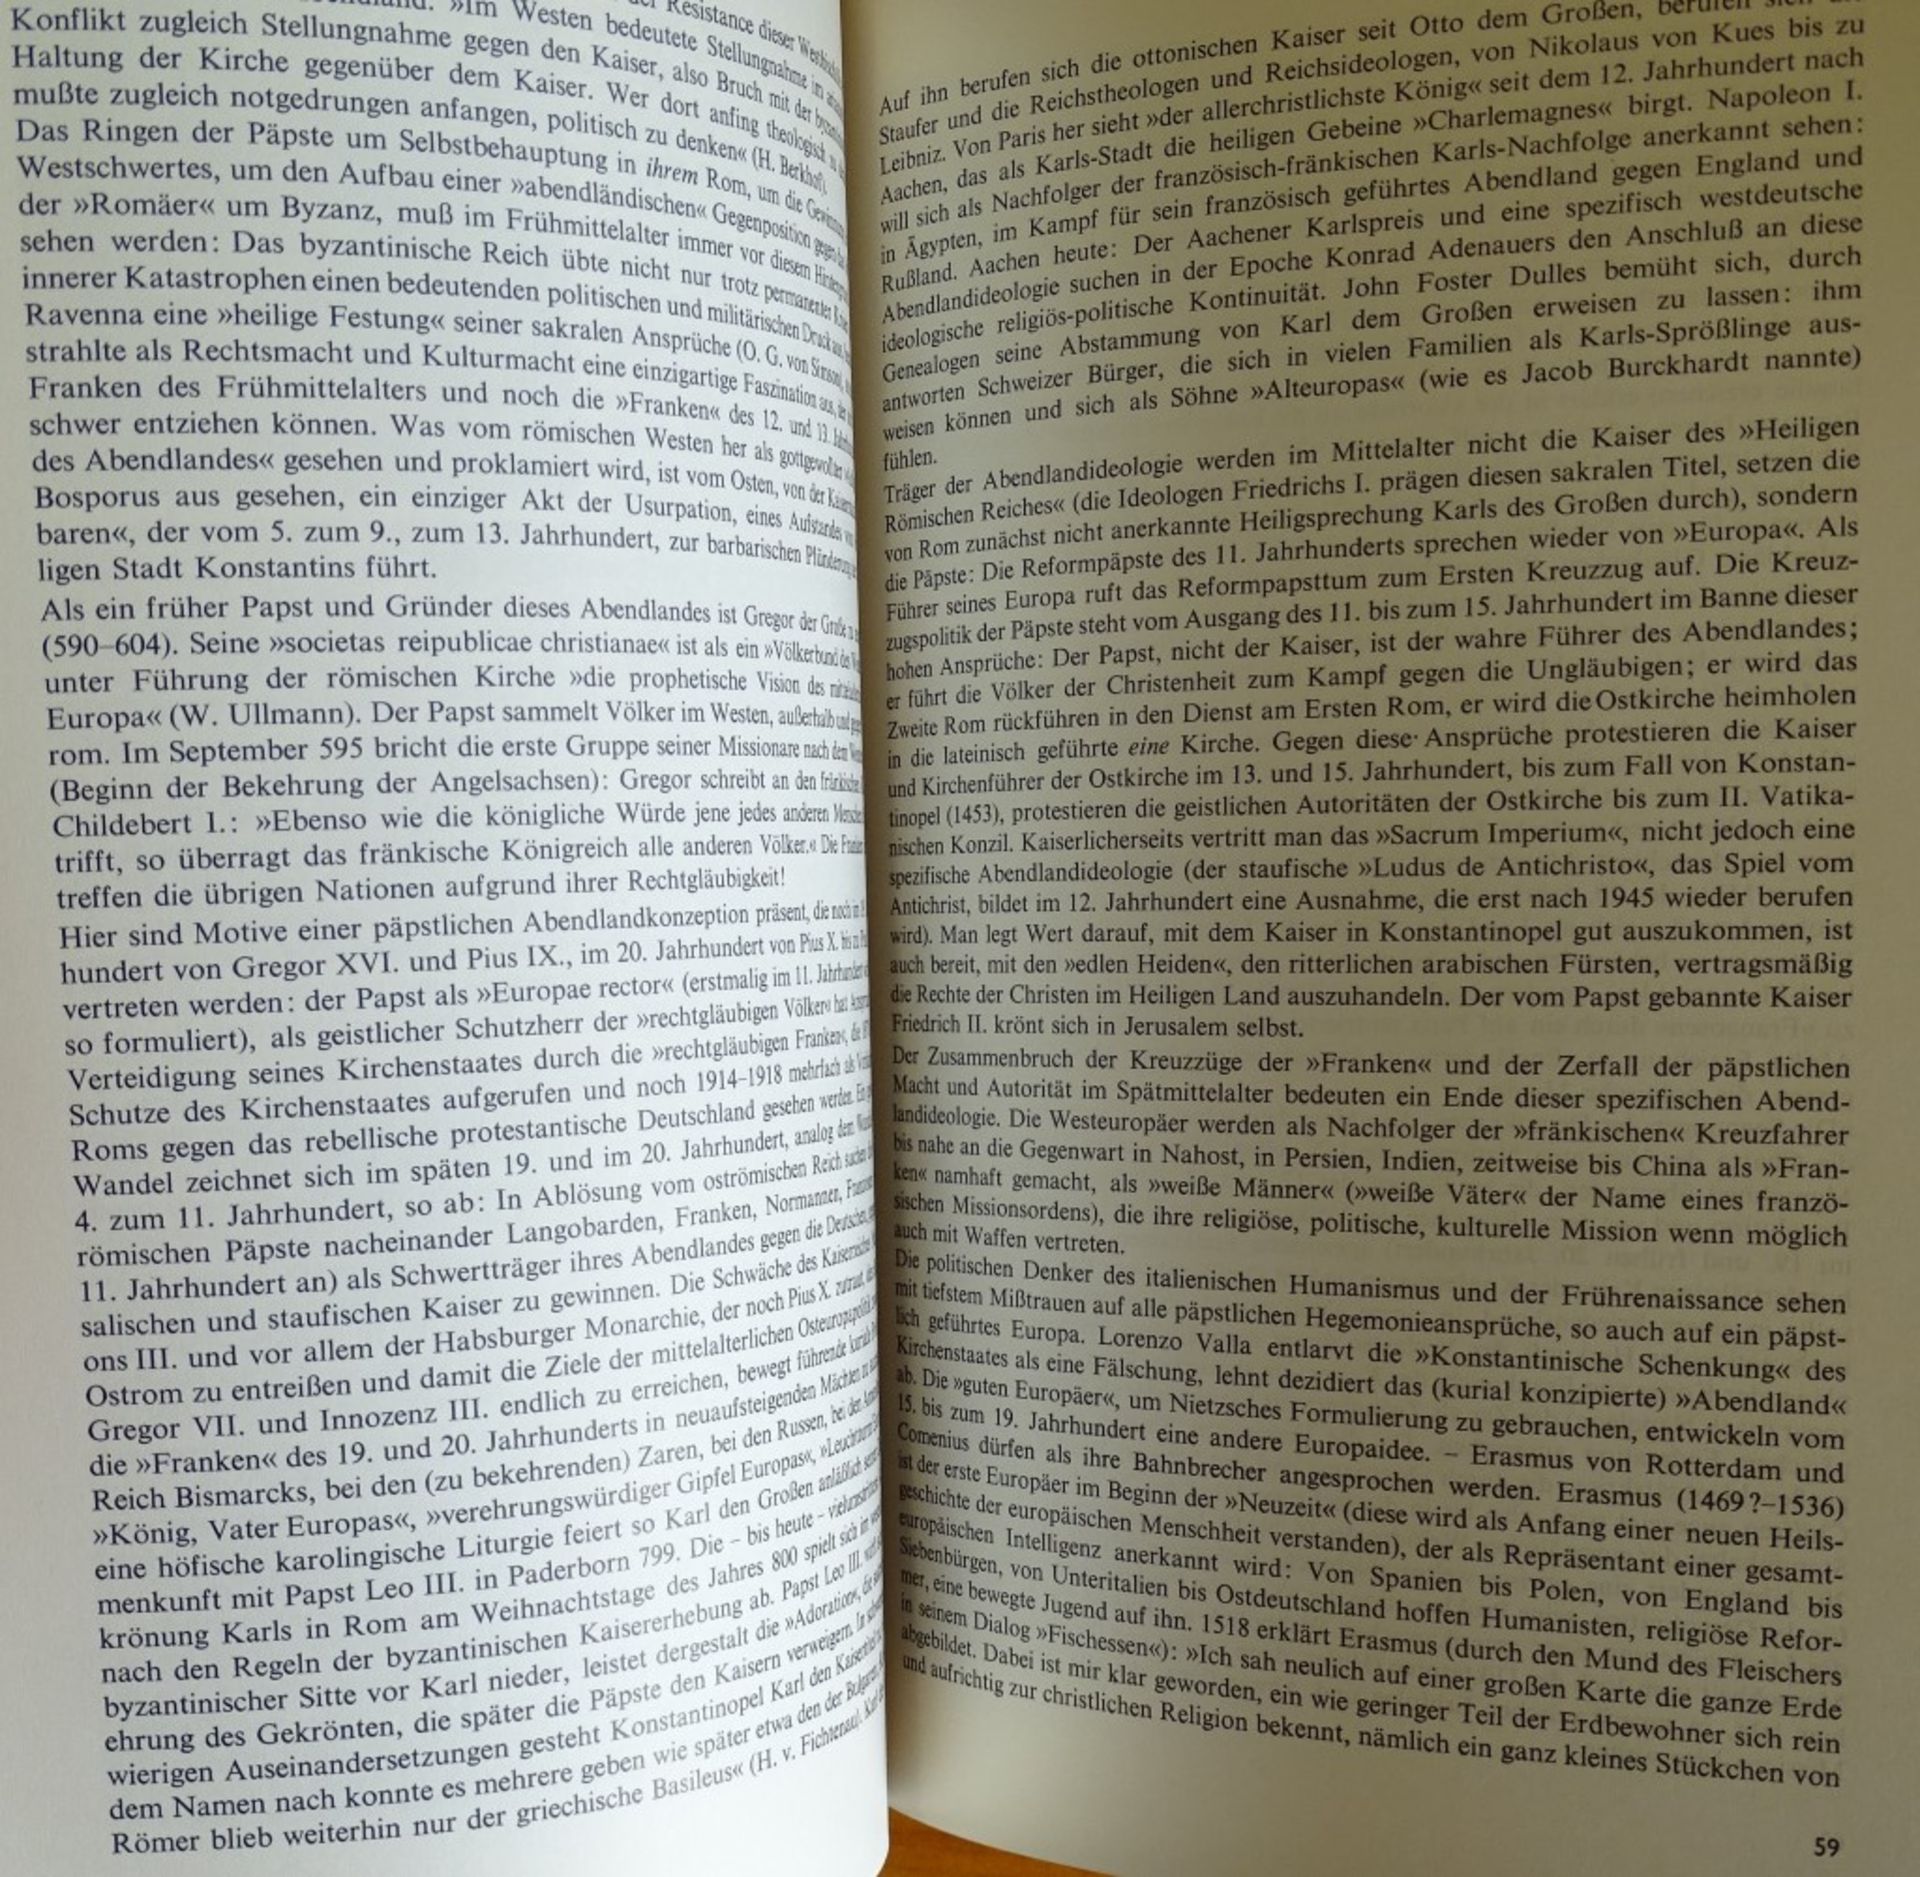 Meyers Enzyklopädisches Lexikon,Band 1-25 + Nachtrag (26).1964, guter Zustand,Goldschnit - Bild 7 aus 10